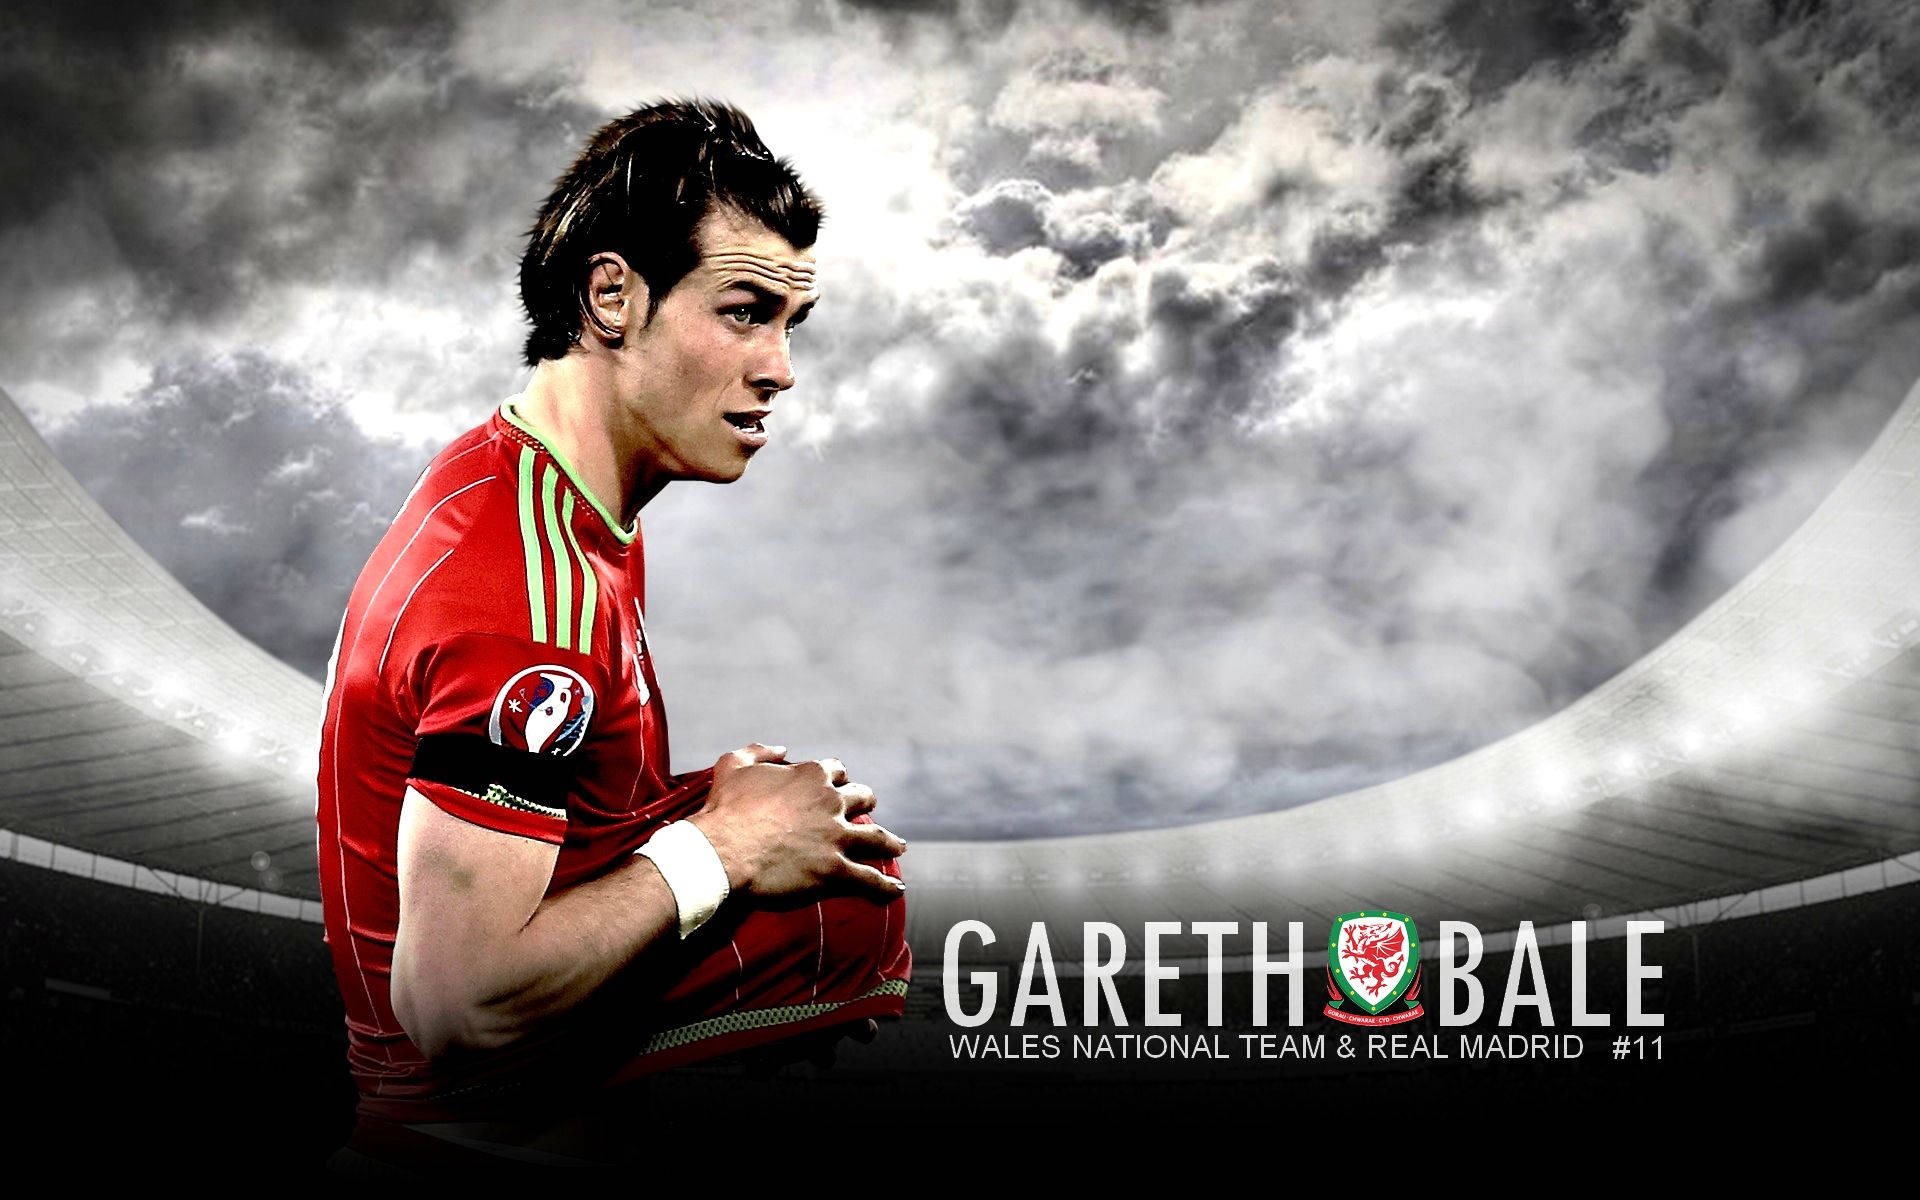 Wales Nationals Fodboldhold Gareth Bale Fanart Tapet Wallpaper